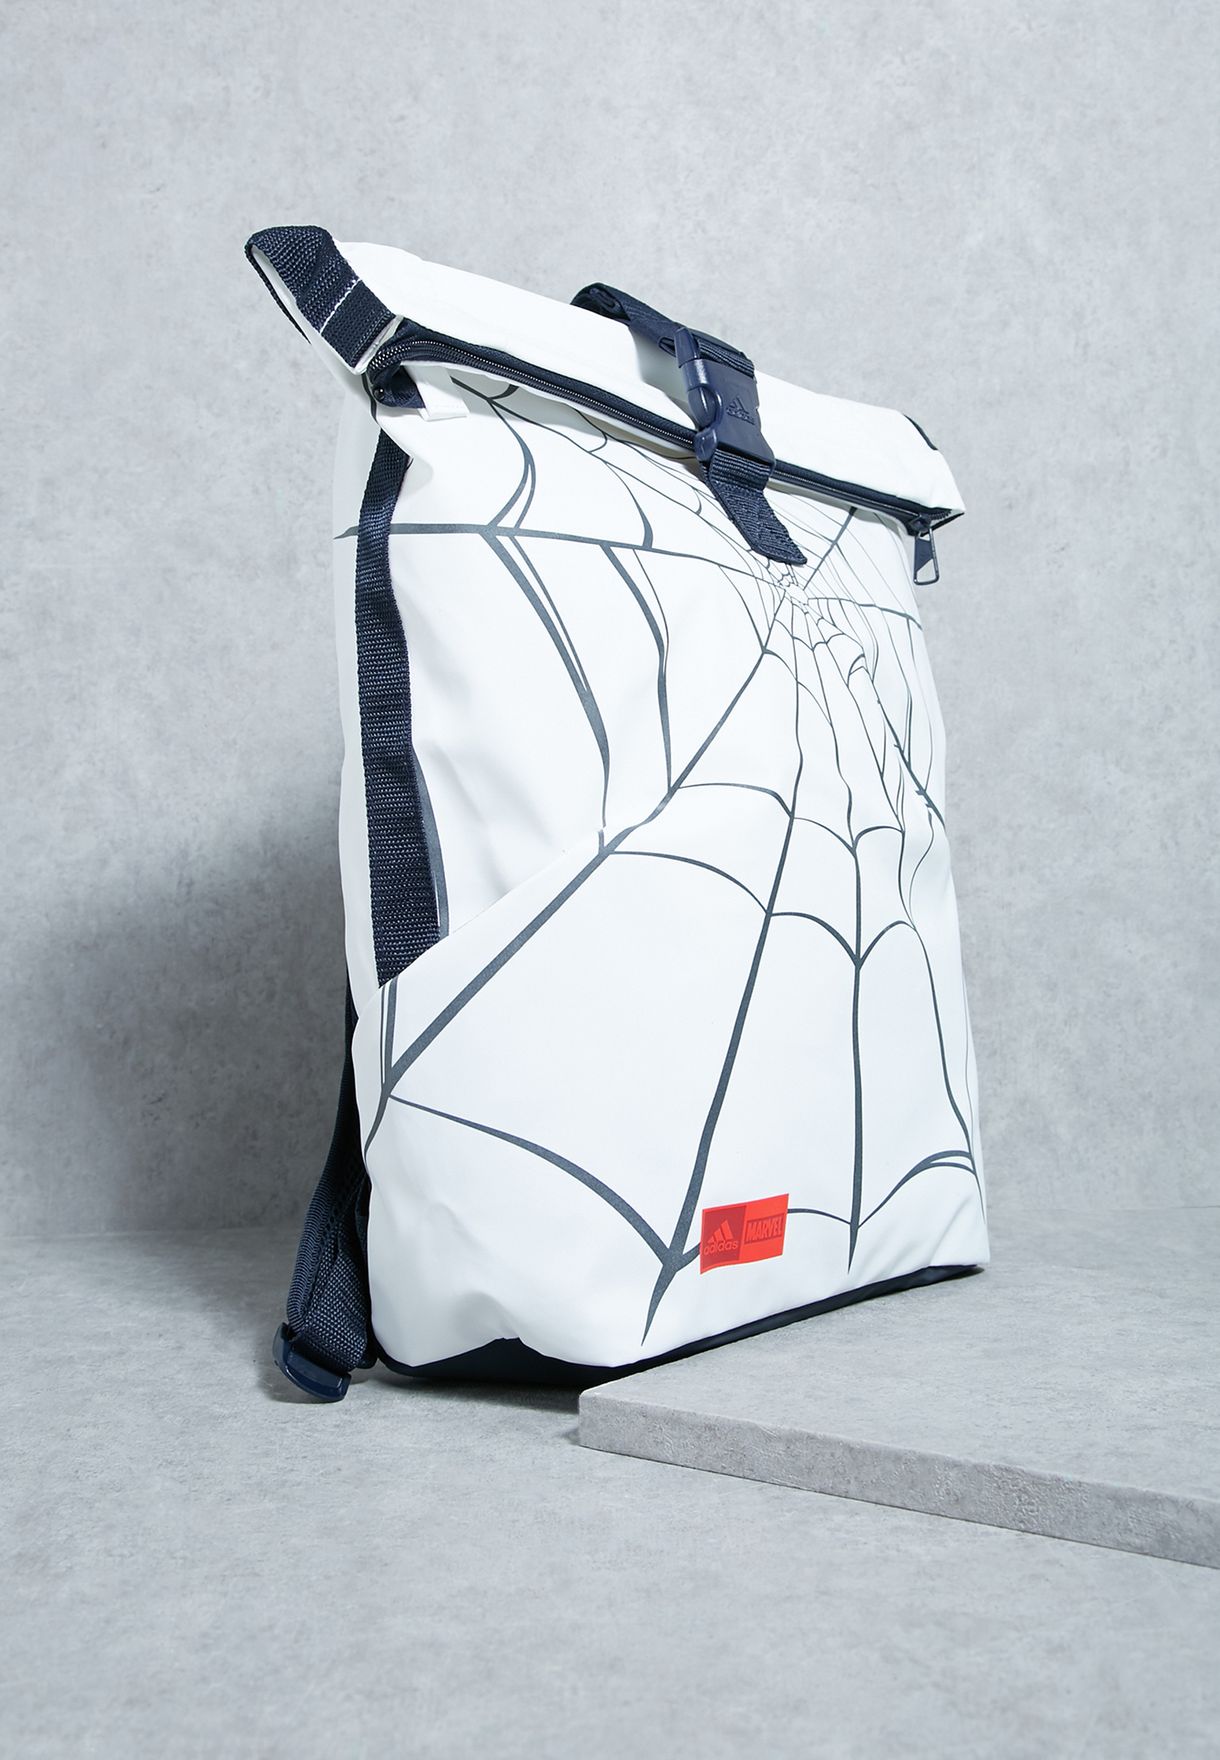 adidas x marvel spiderman backpack